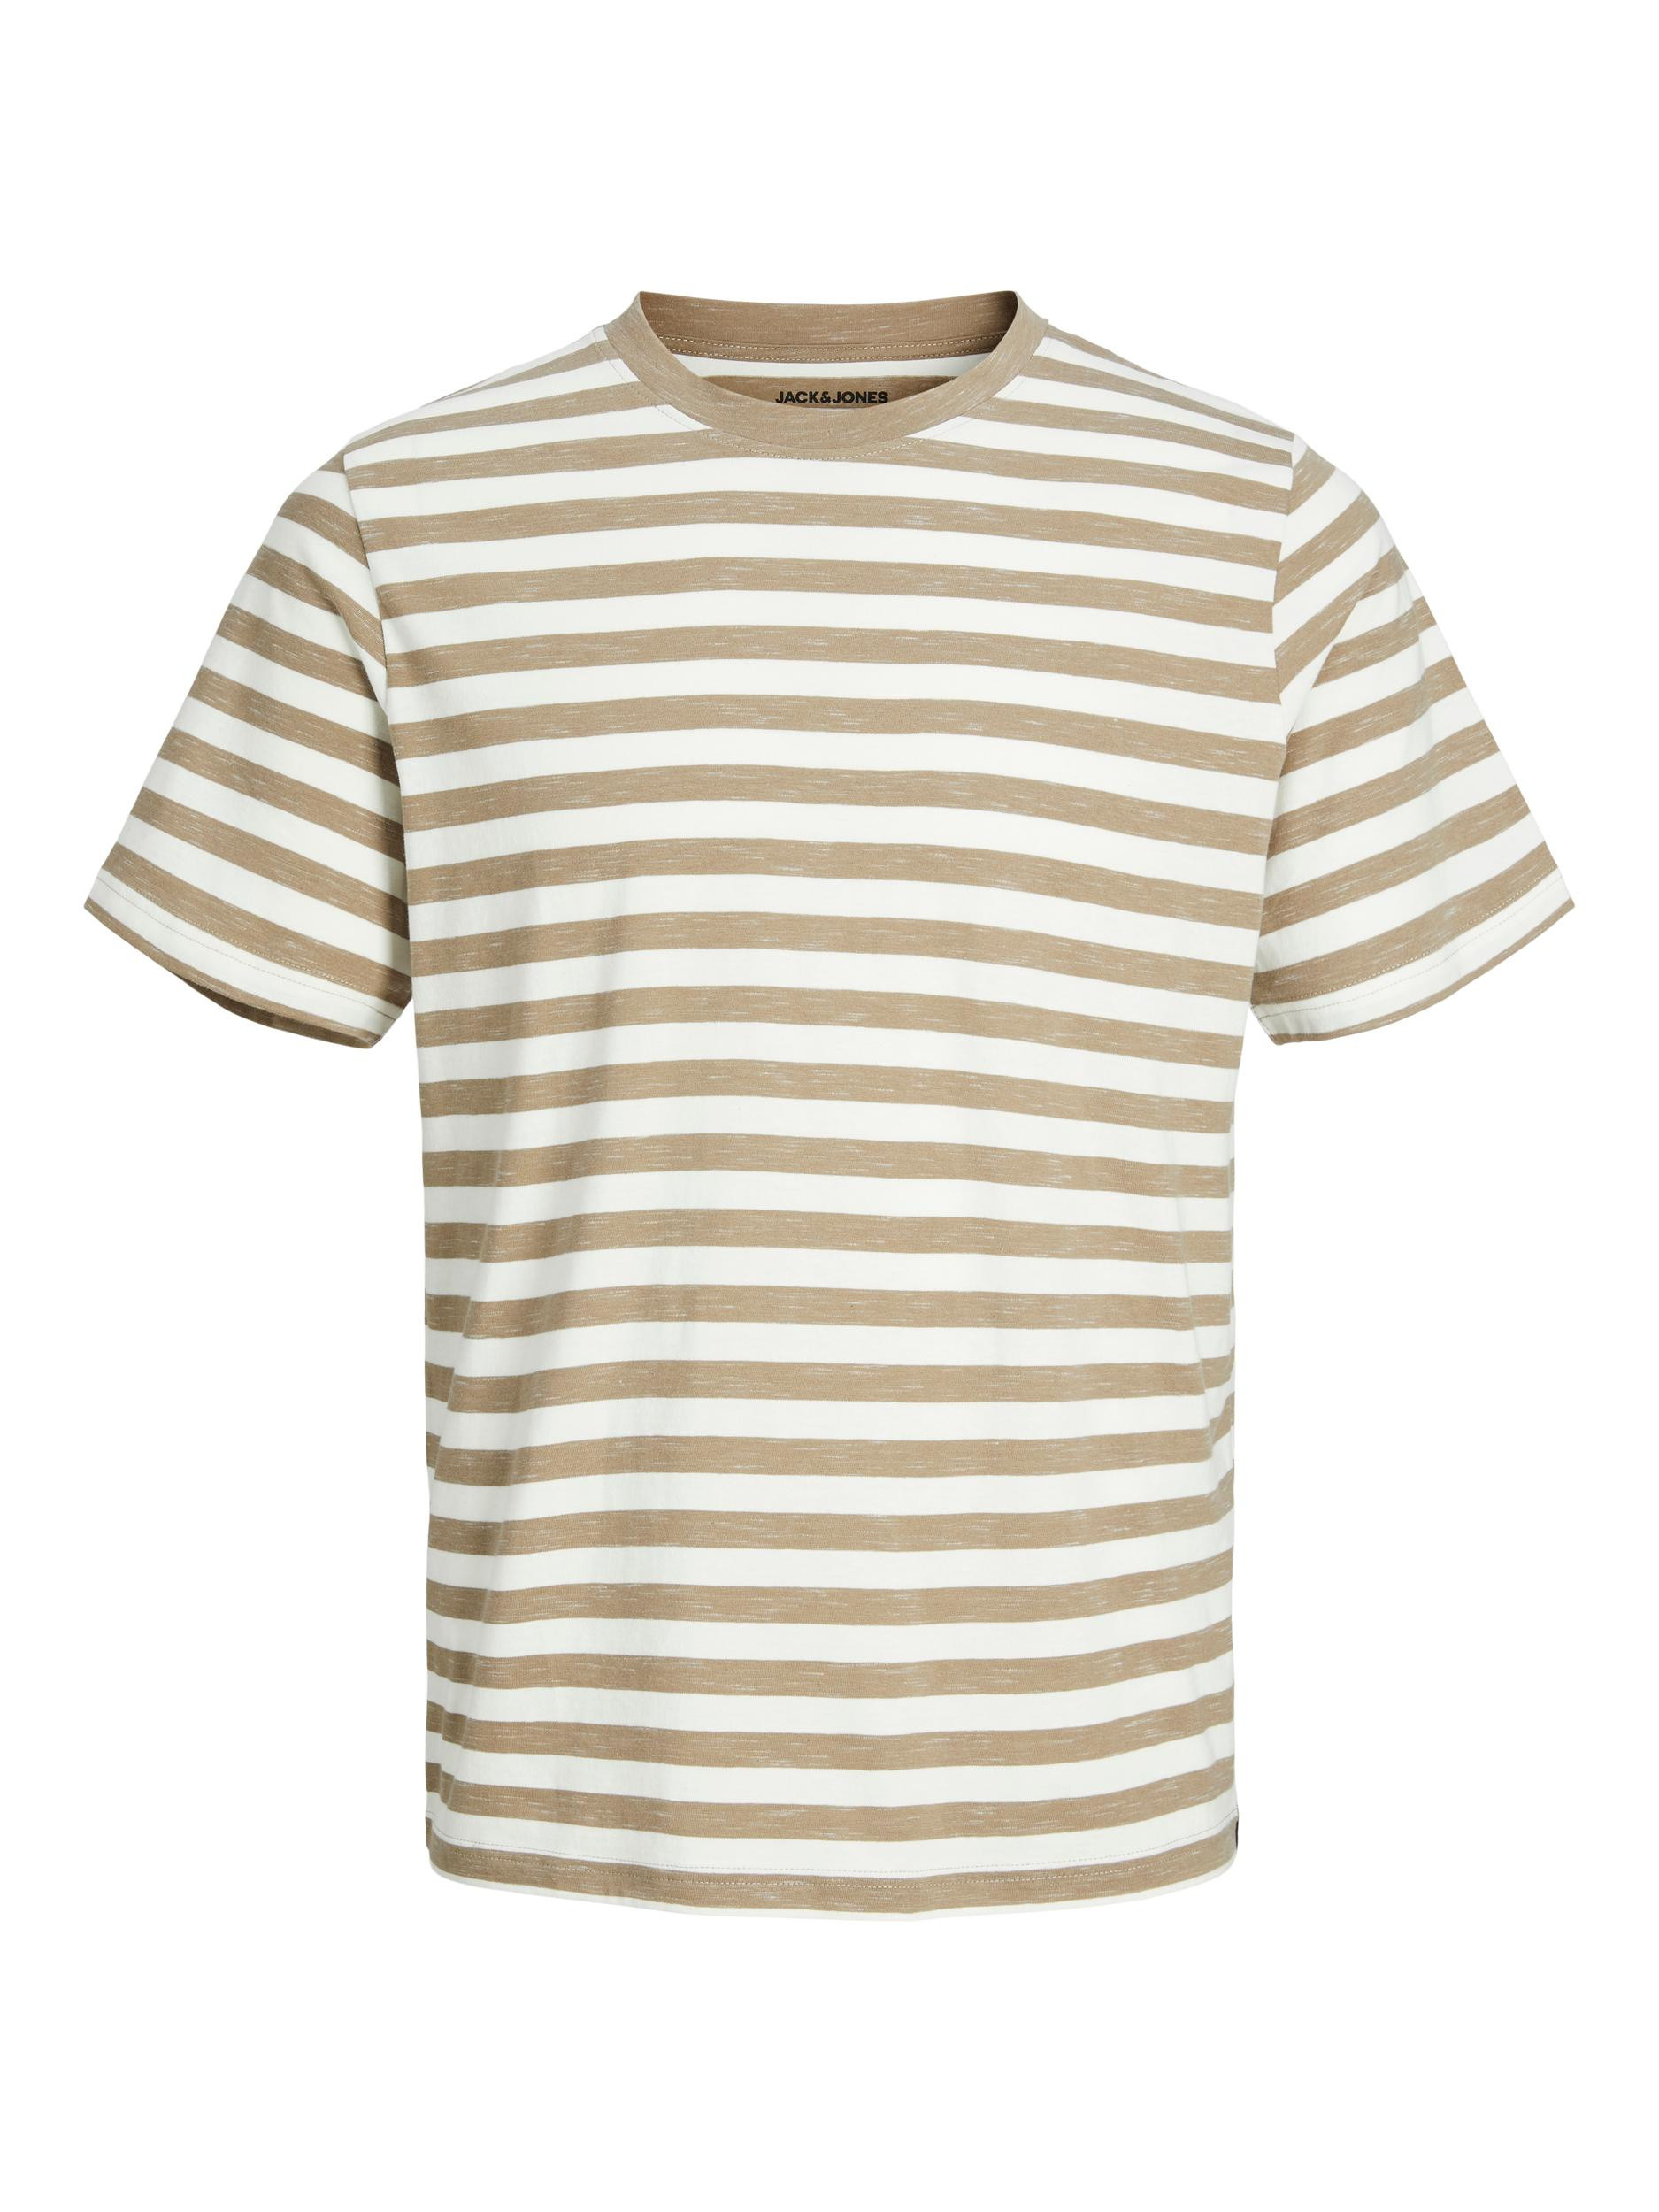 Jack & Jones - T-shirt a righe, Beige, large image number 0